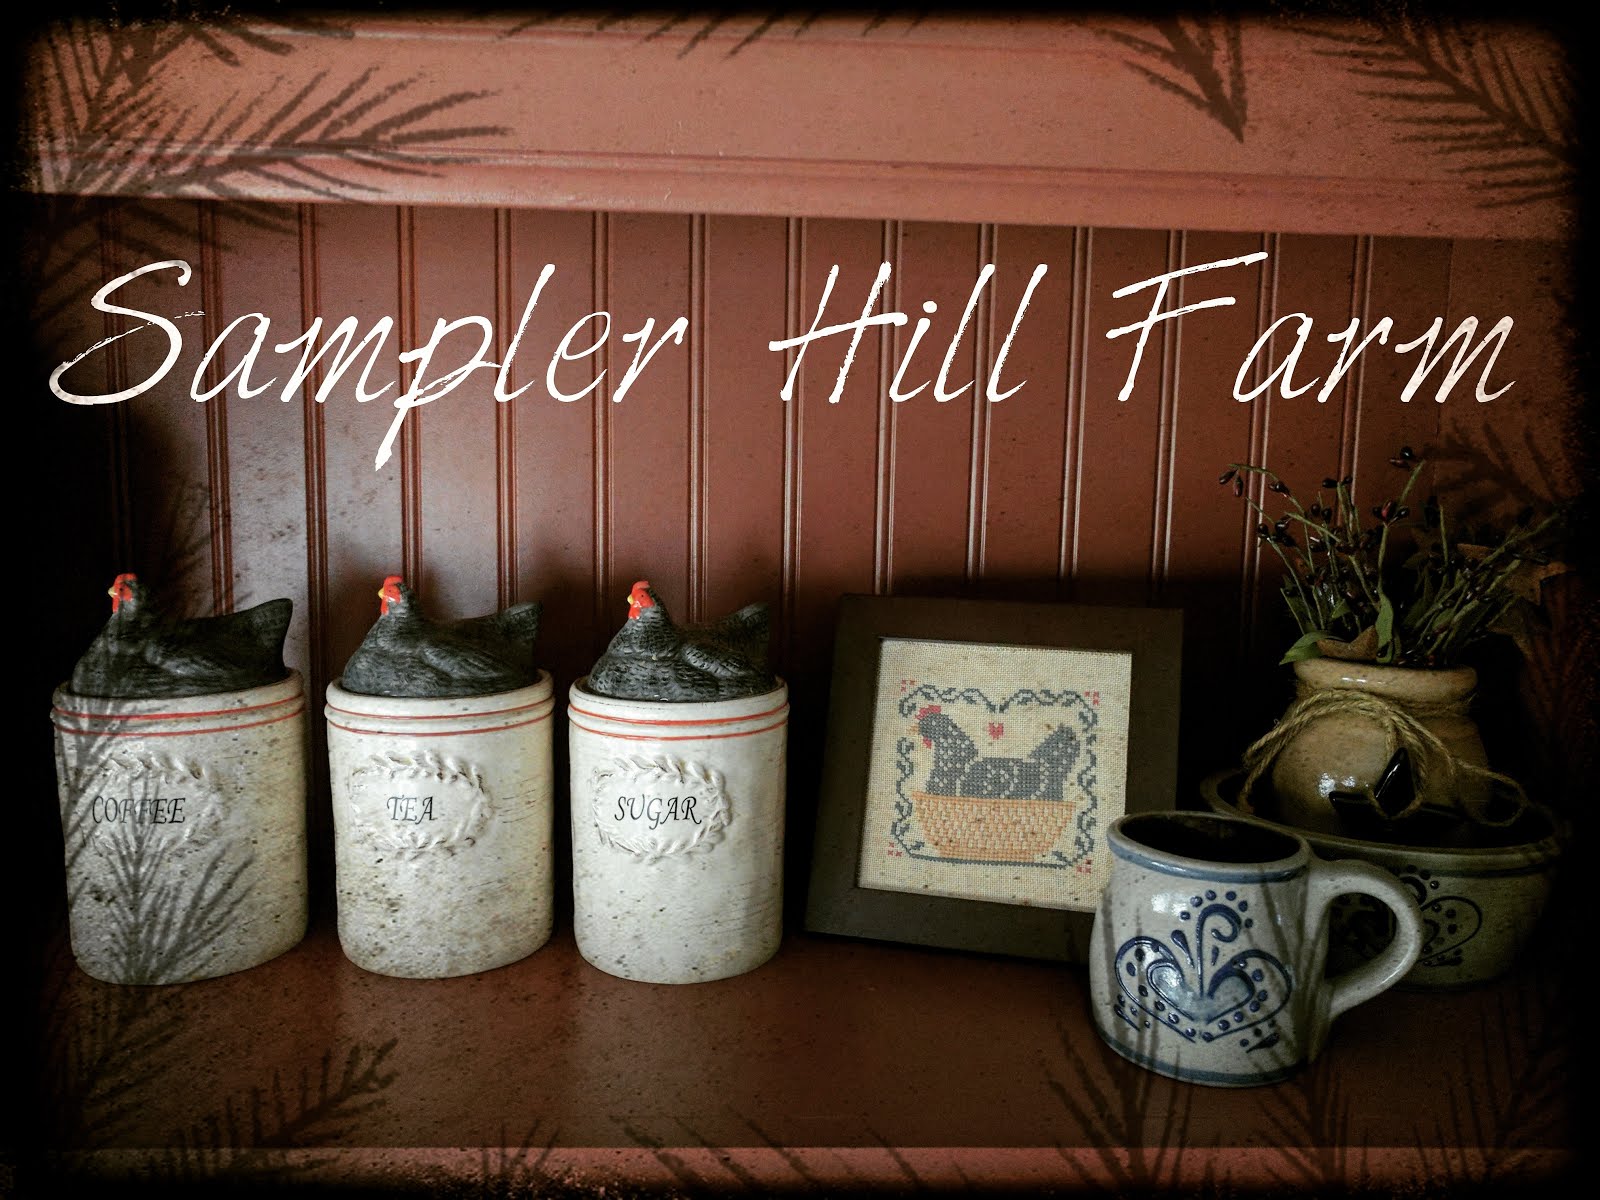 Sampler Hill Farm